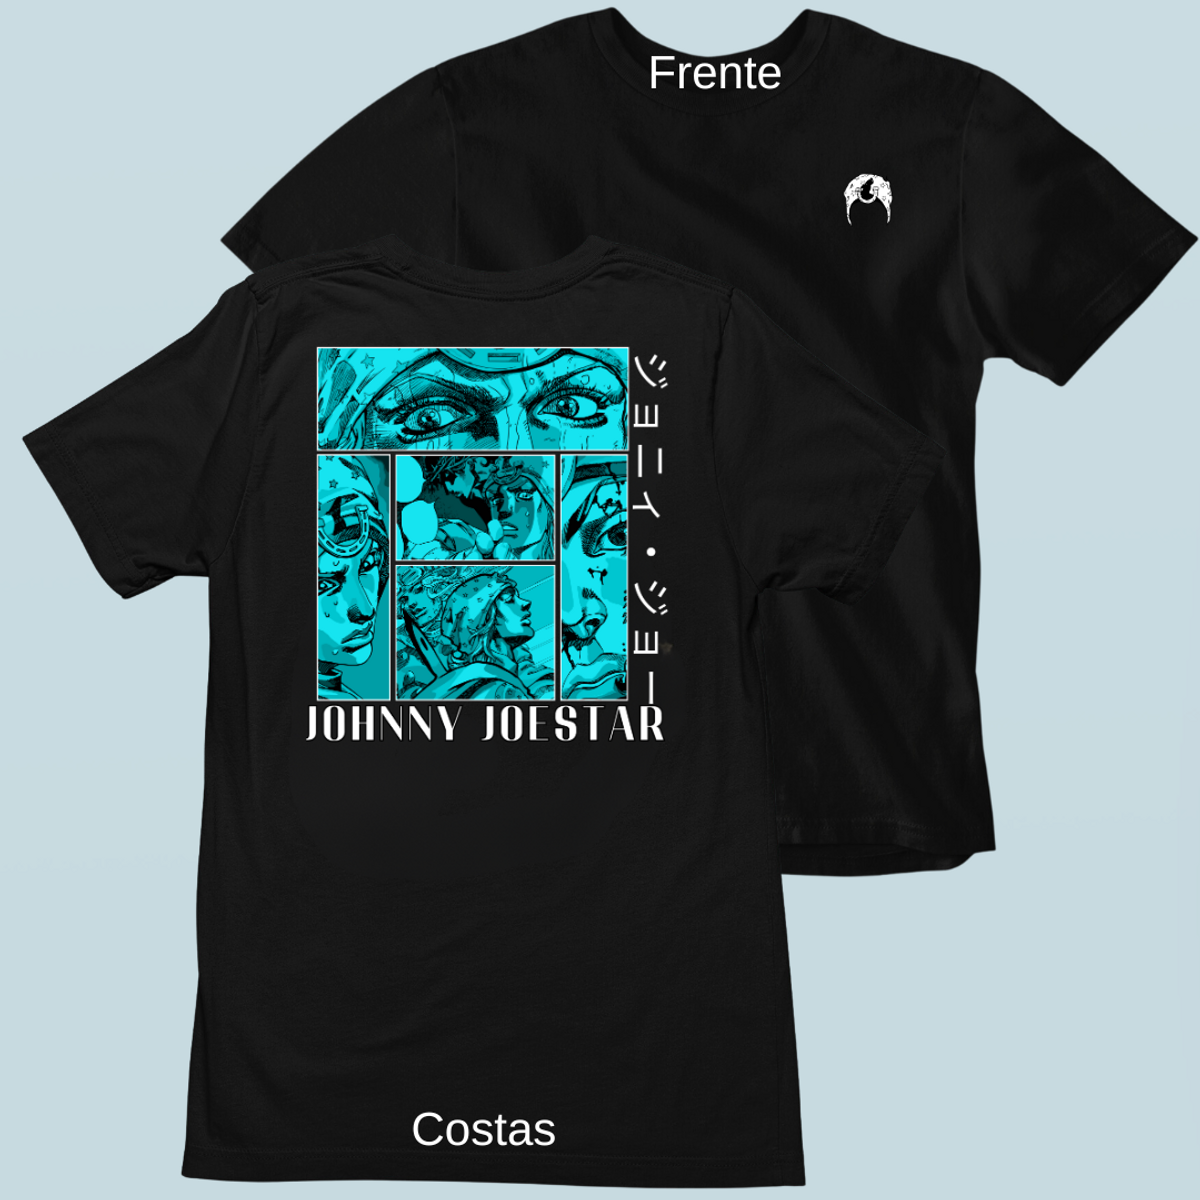 Nome do produto: Camiseta Johnny Frente Costas 